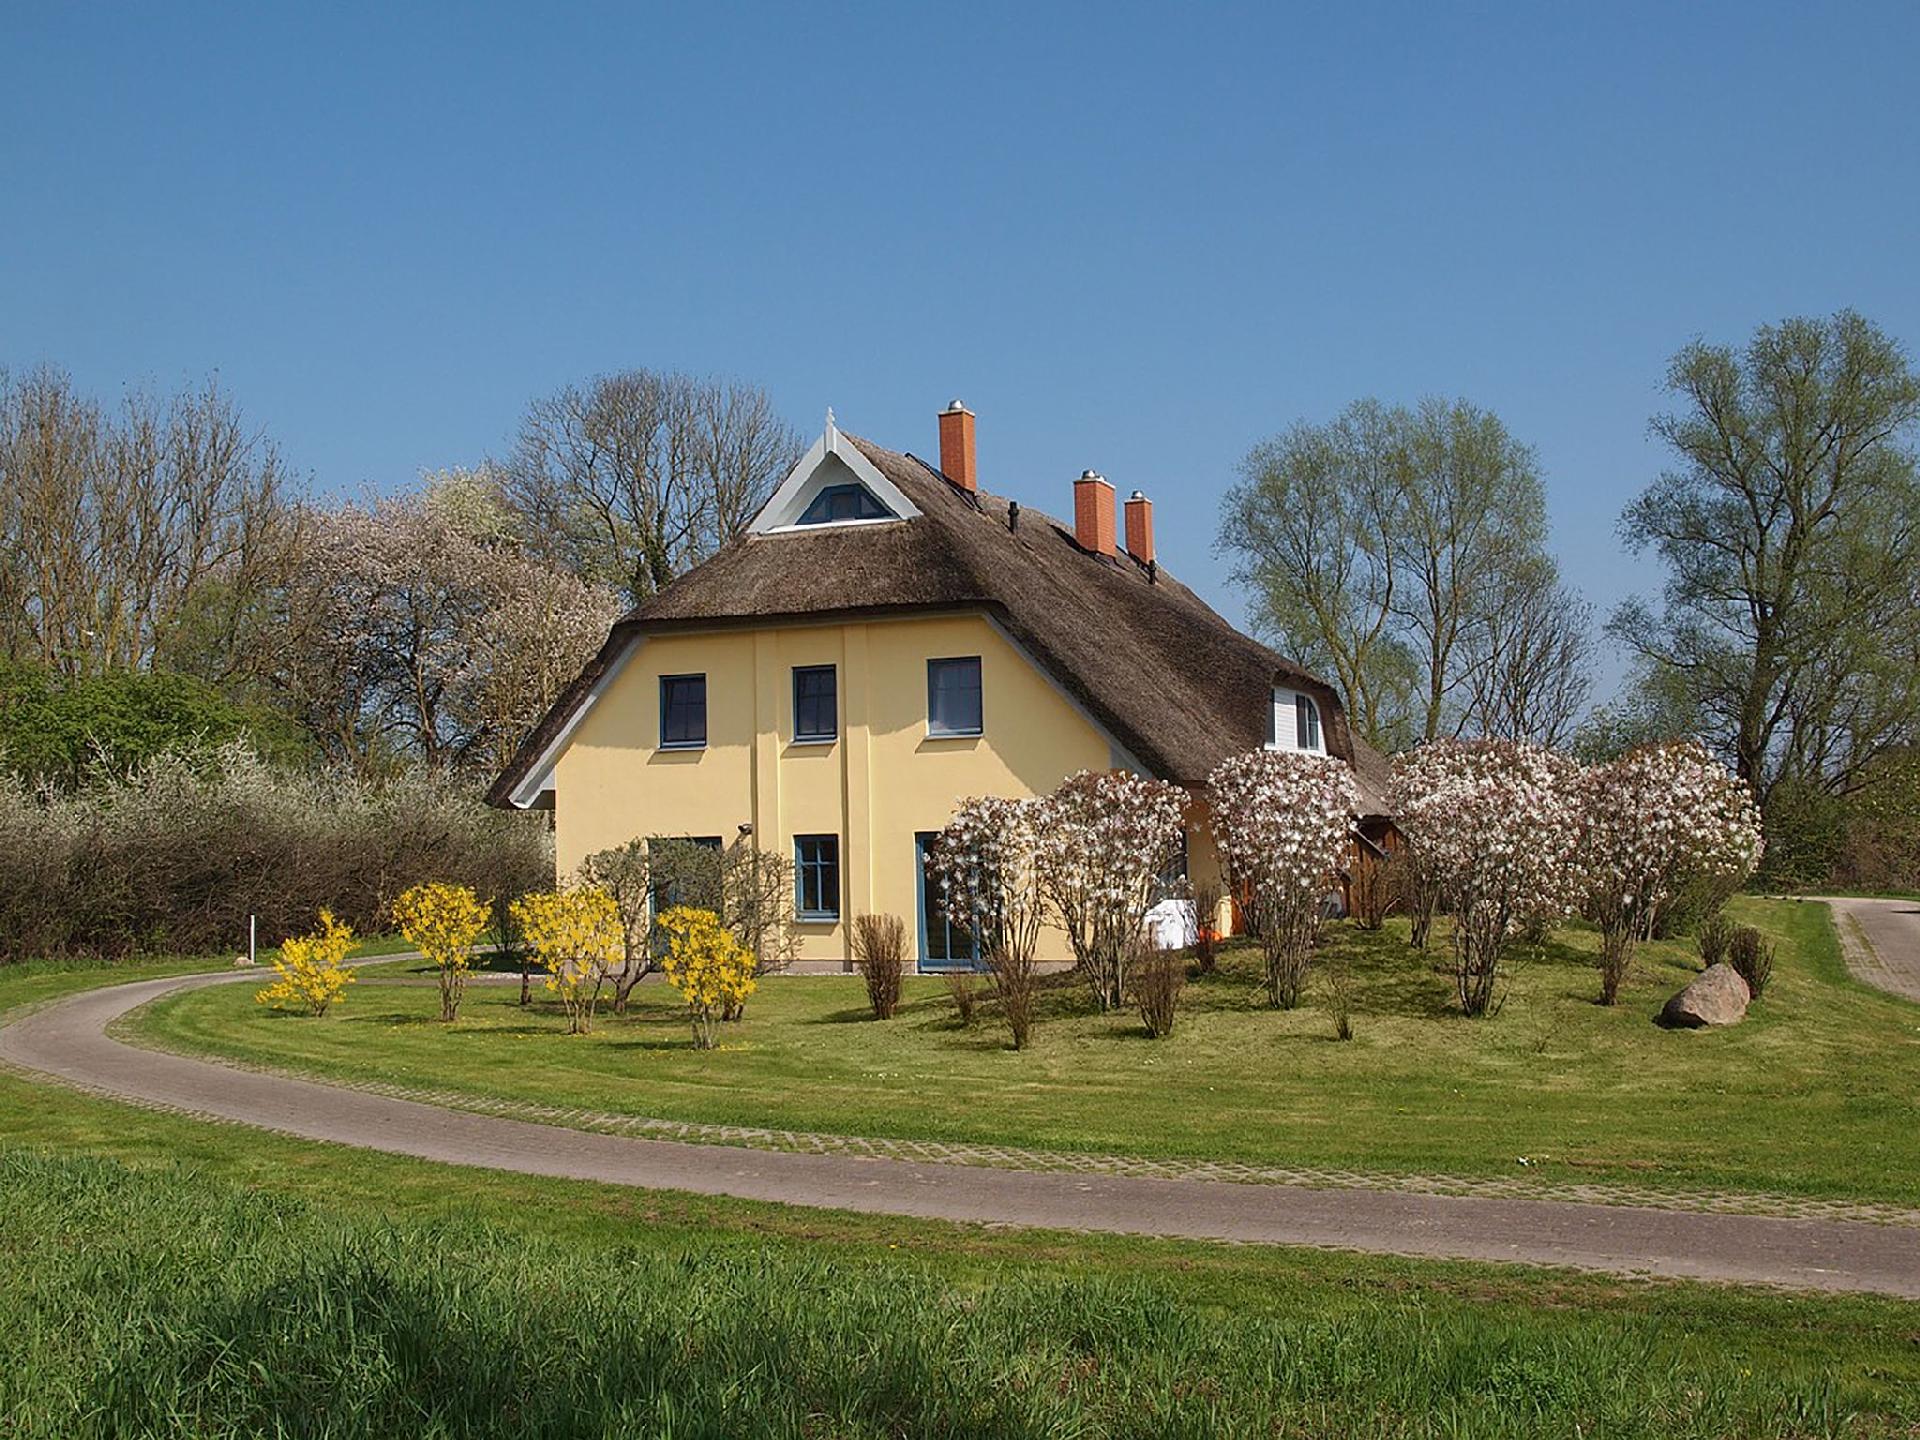 Tolles Ferienhaus in Poseritz mit Garten, Terrasse Ferienhaus in Mecklenburg Vorpommern